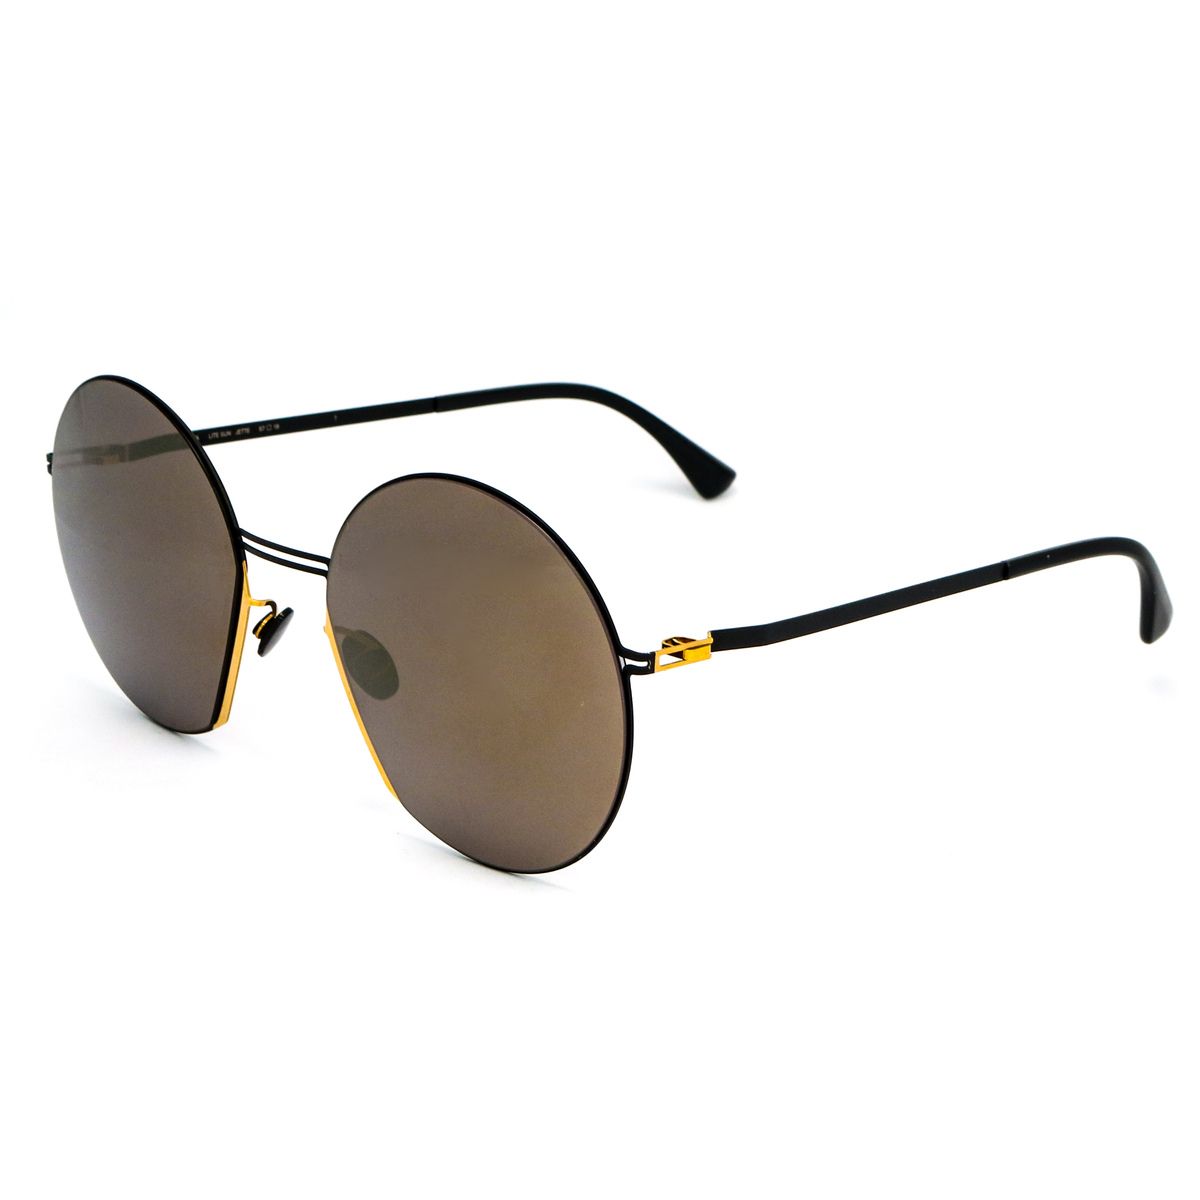 JETTE Round Sunglasses 56 - size 57